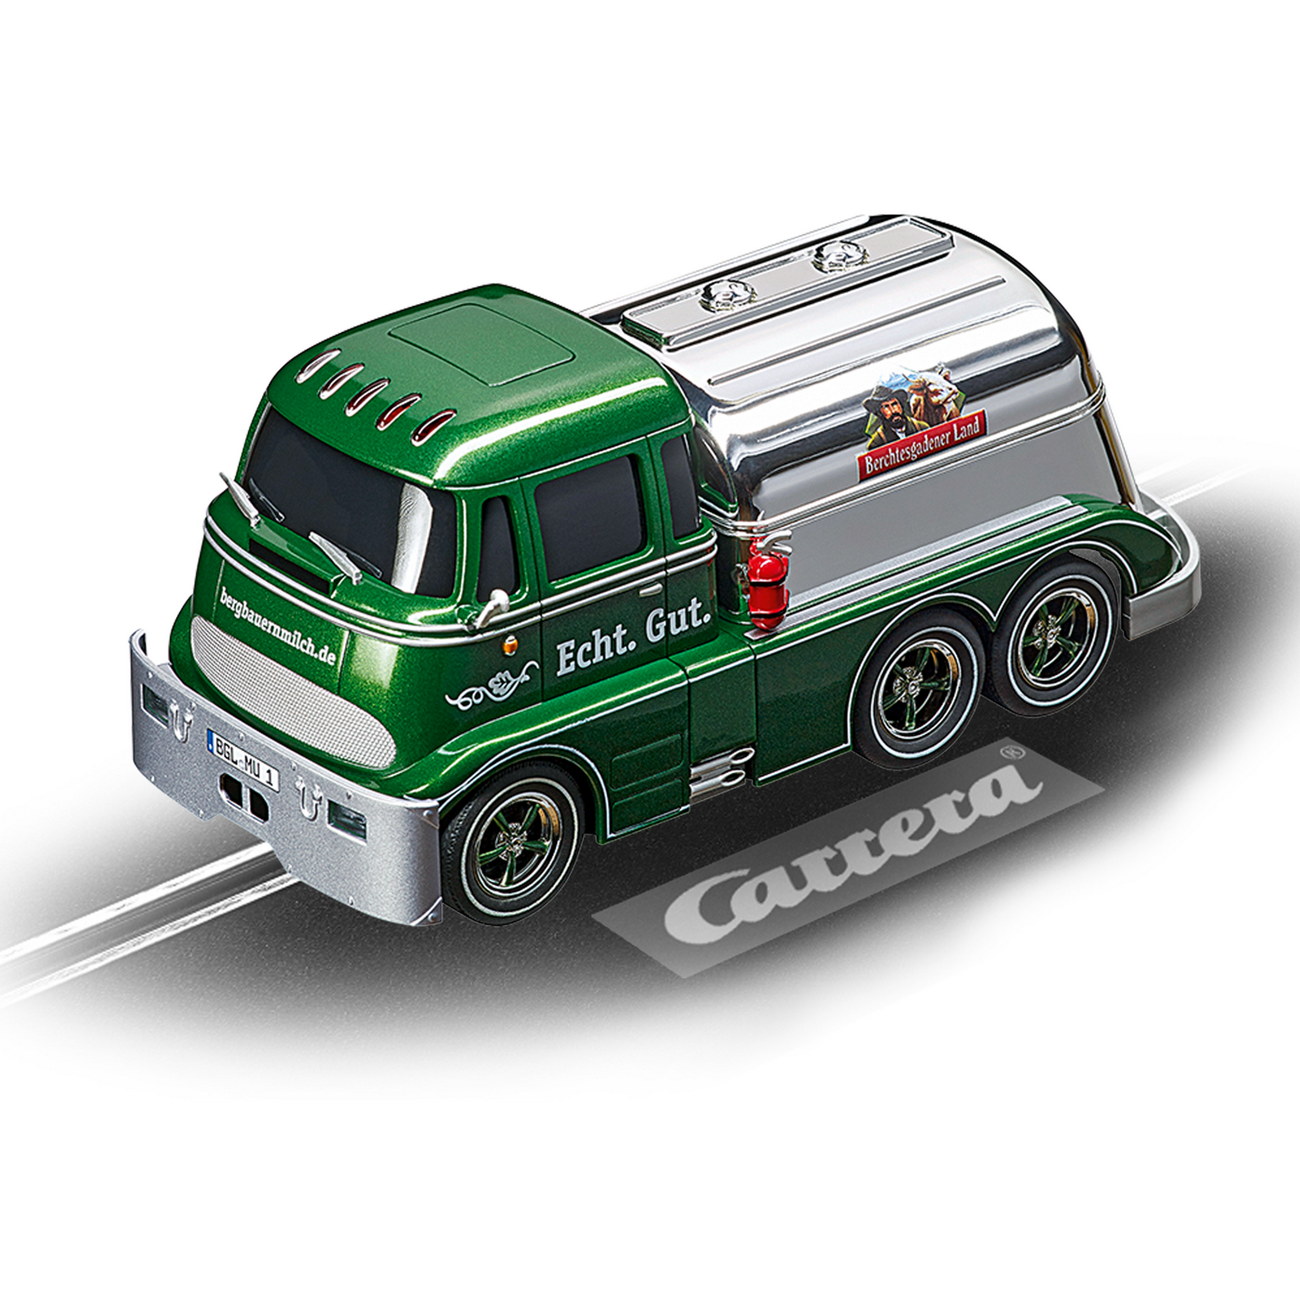 Carrera digital 132 - Carrera Tanker Berchtesgadener Land (30889)